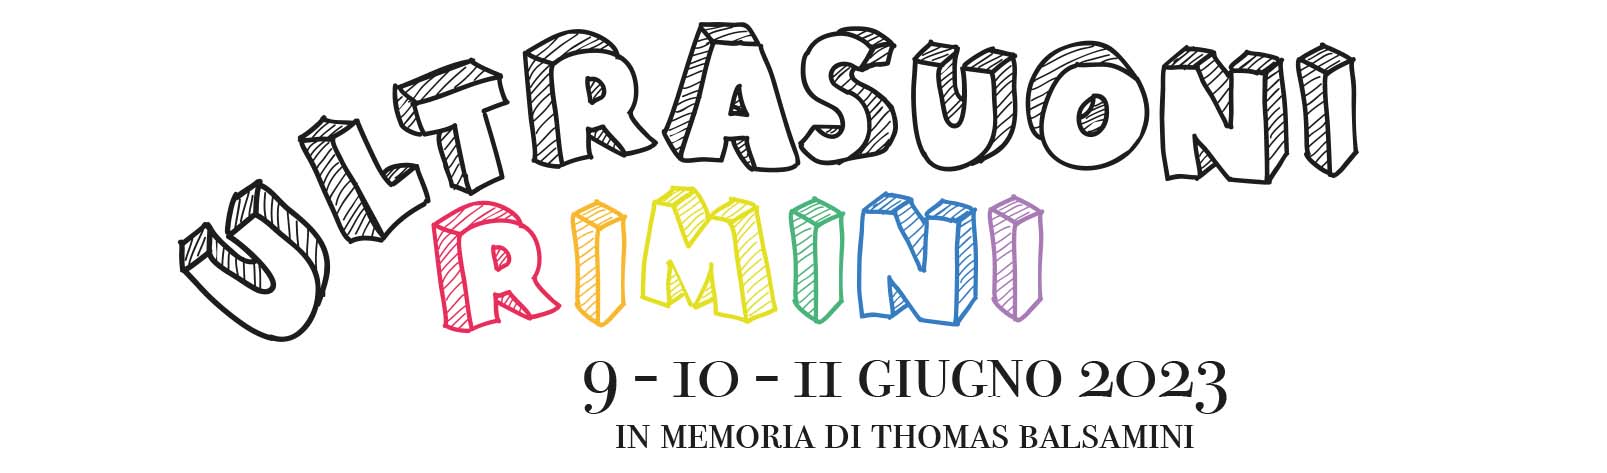 Ultrasuoni Rimini, ecco il programma di Domenica 11 giugno